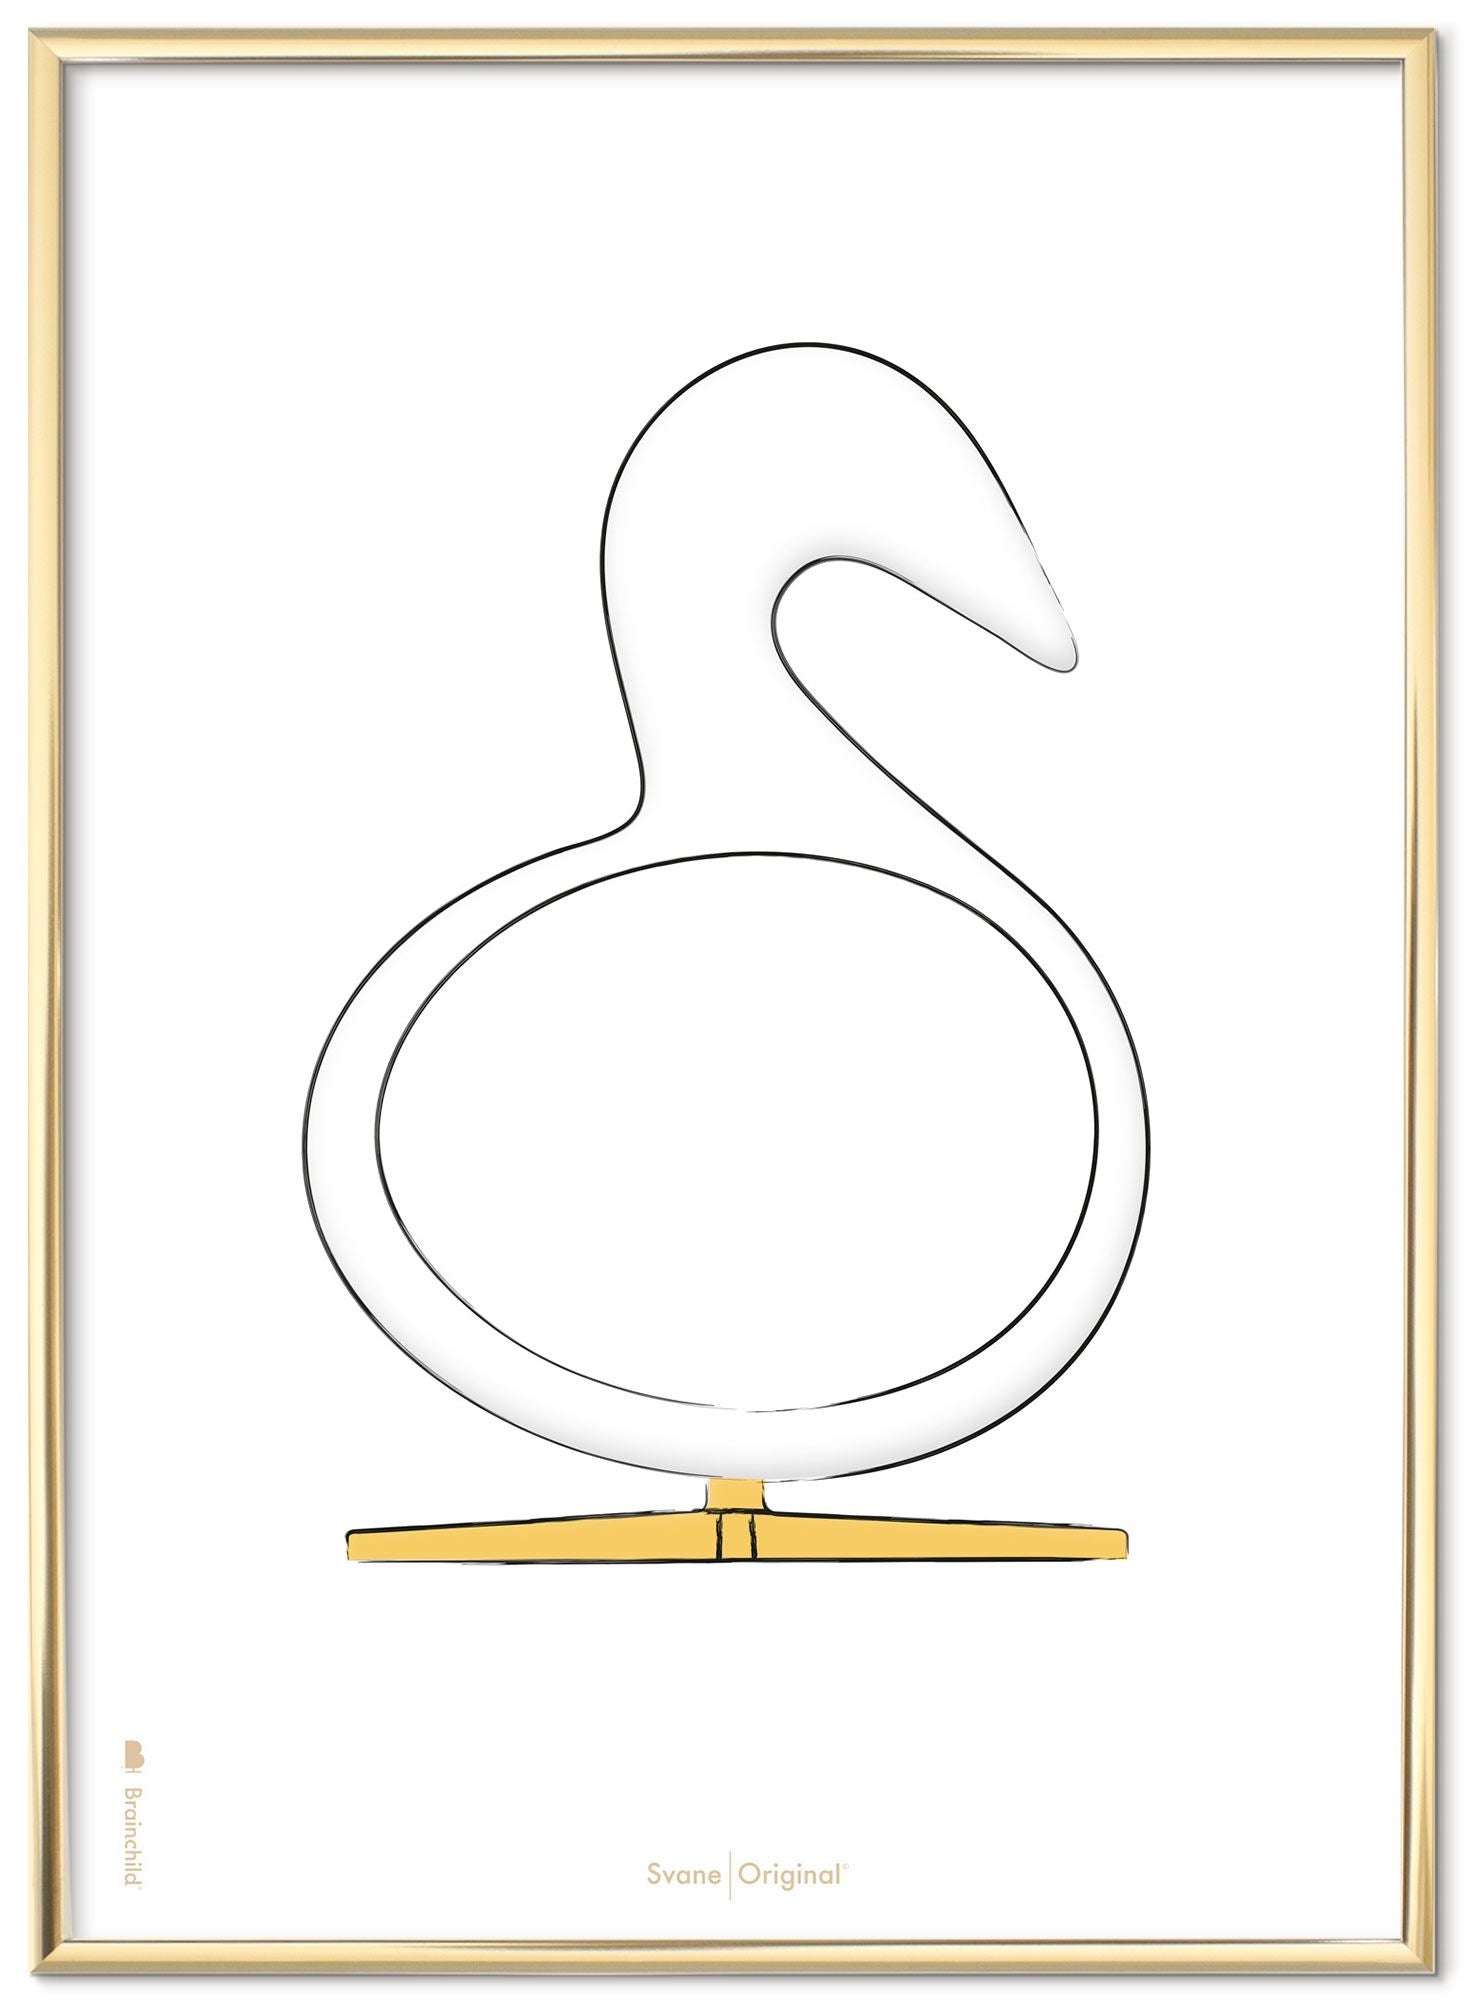 Schema poster di disegno di disegno del cigno da gioco realizzato in metallo colorato in ottone 50x70 cm, sfondo bianco